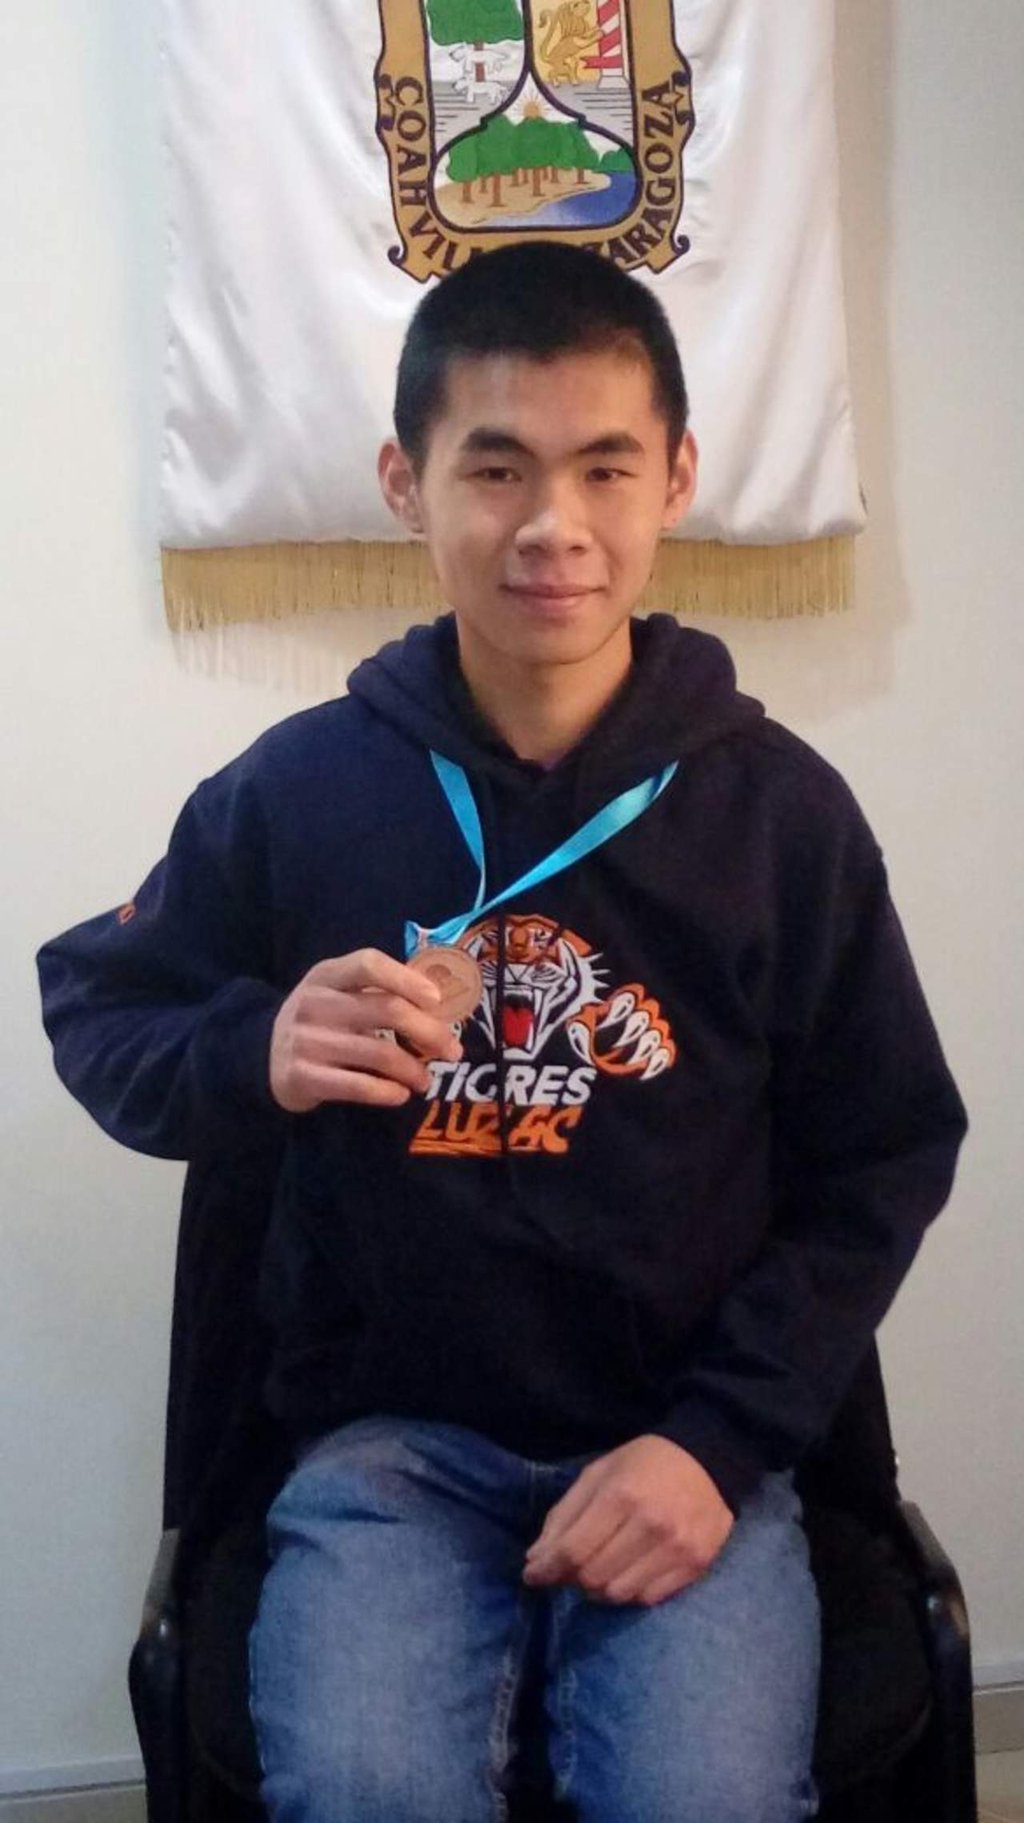 Estudiante de Luzac gana tercer lugar en Olimpiada Nacional de Biología